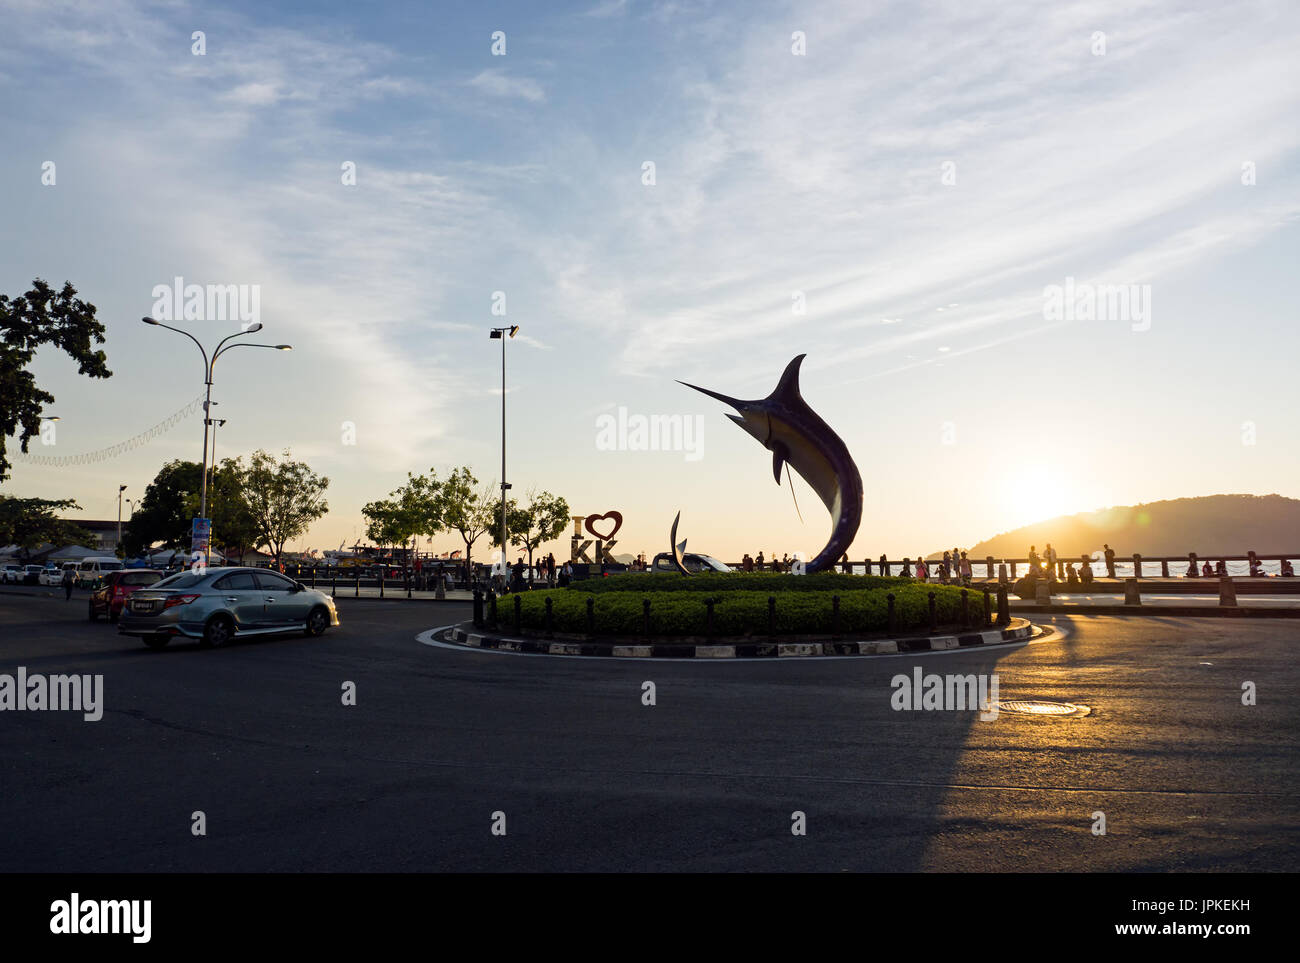 Kota Kinabalu, Malesia - Agosto 01, 2017: silhouette del famoso Marlin statua di pesce al capitale di Sabah. La statua è stata inaugurata il 2 febbraio 20 Foto Stock